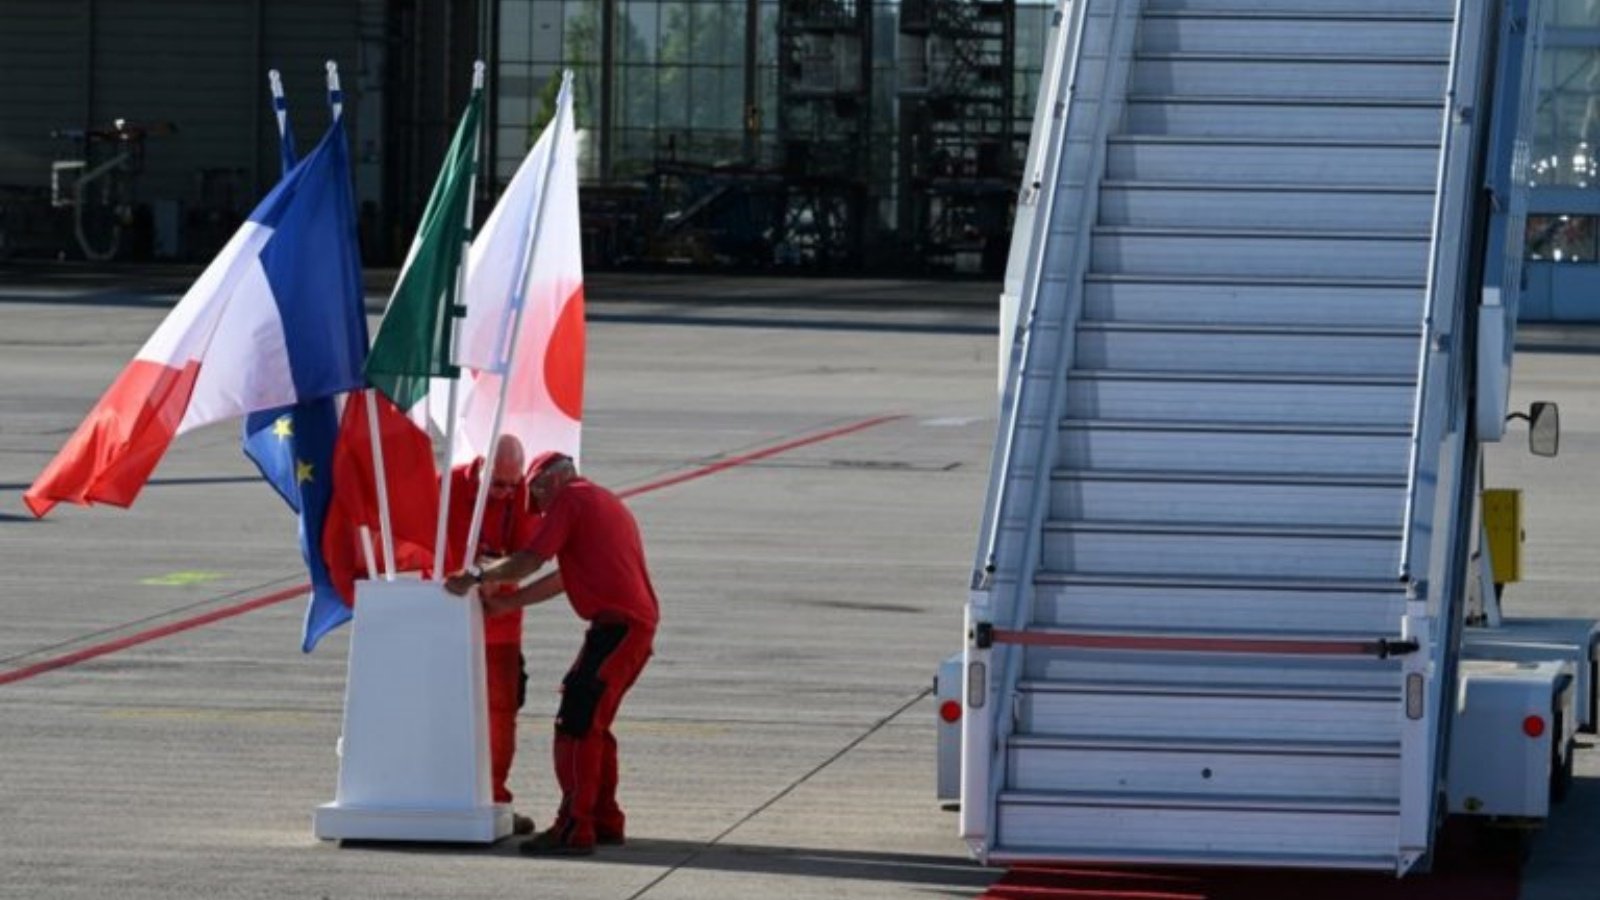 موظفو المطار يرفعون أعلام اليابان وإيطاليا وفرنسا والاتحاد الأوروبي قبل وصول قادة مجموعة السبع إلى مطار فرانز جوزيف شتراوس في ميونيخ، جنوب ألمانيا، في 25 يونيو 2022، عشية قمة مجموعة السبع.